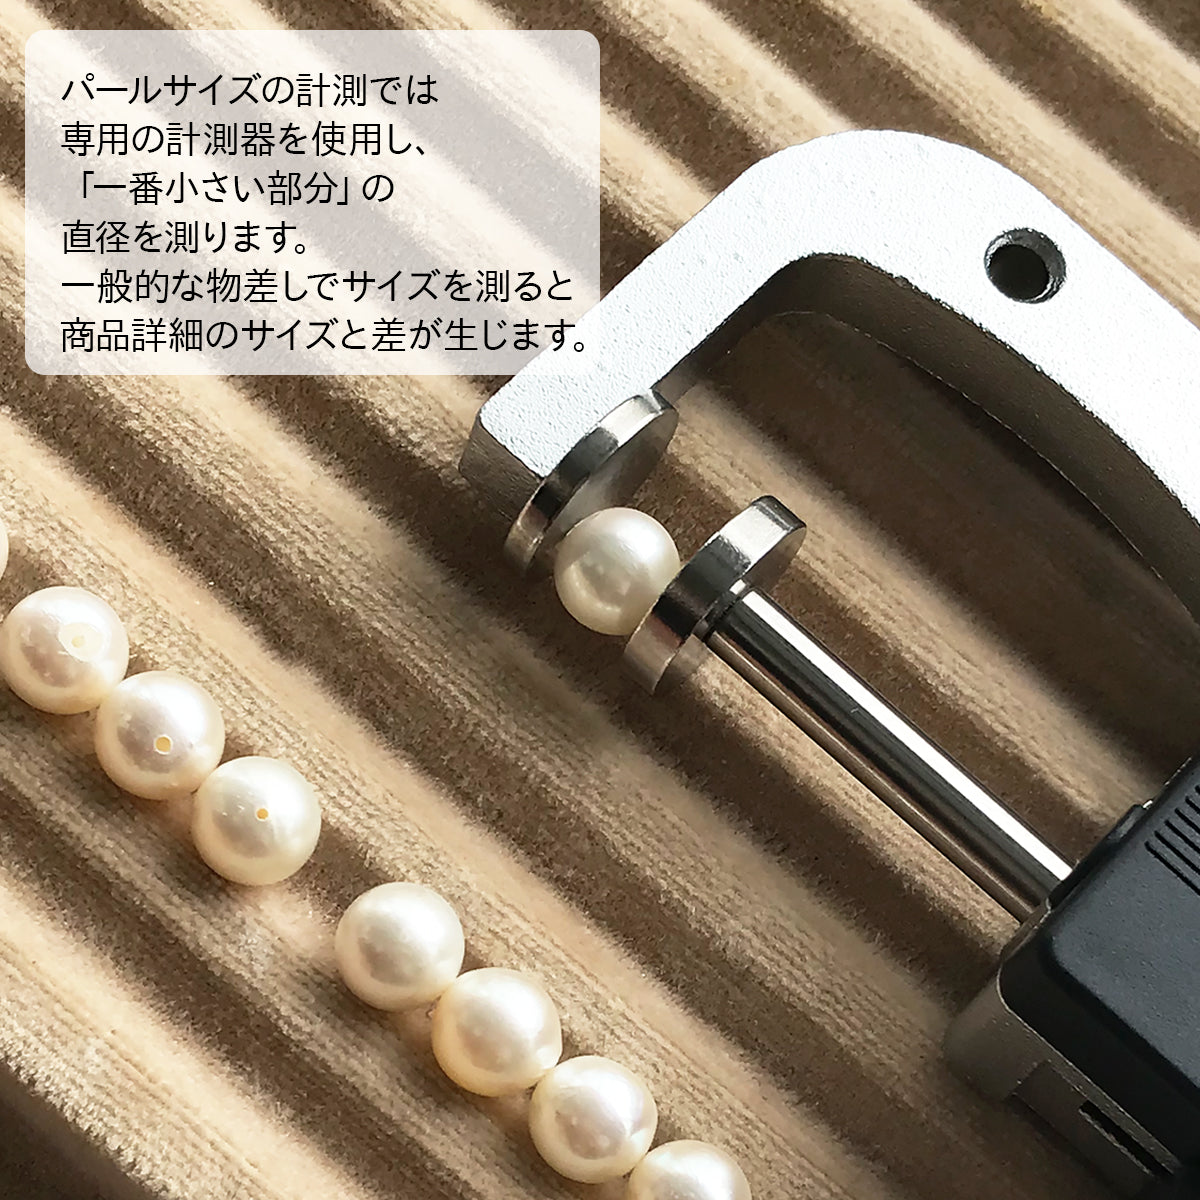 真珠 ネックレス バチカン キラキラ レディース ホワイト 8.5-9.0mm あこや真珠 SV925 ホワイト ブラック 保管用グレーケース付